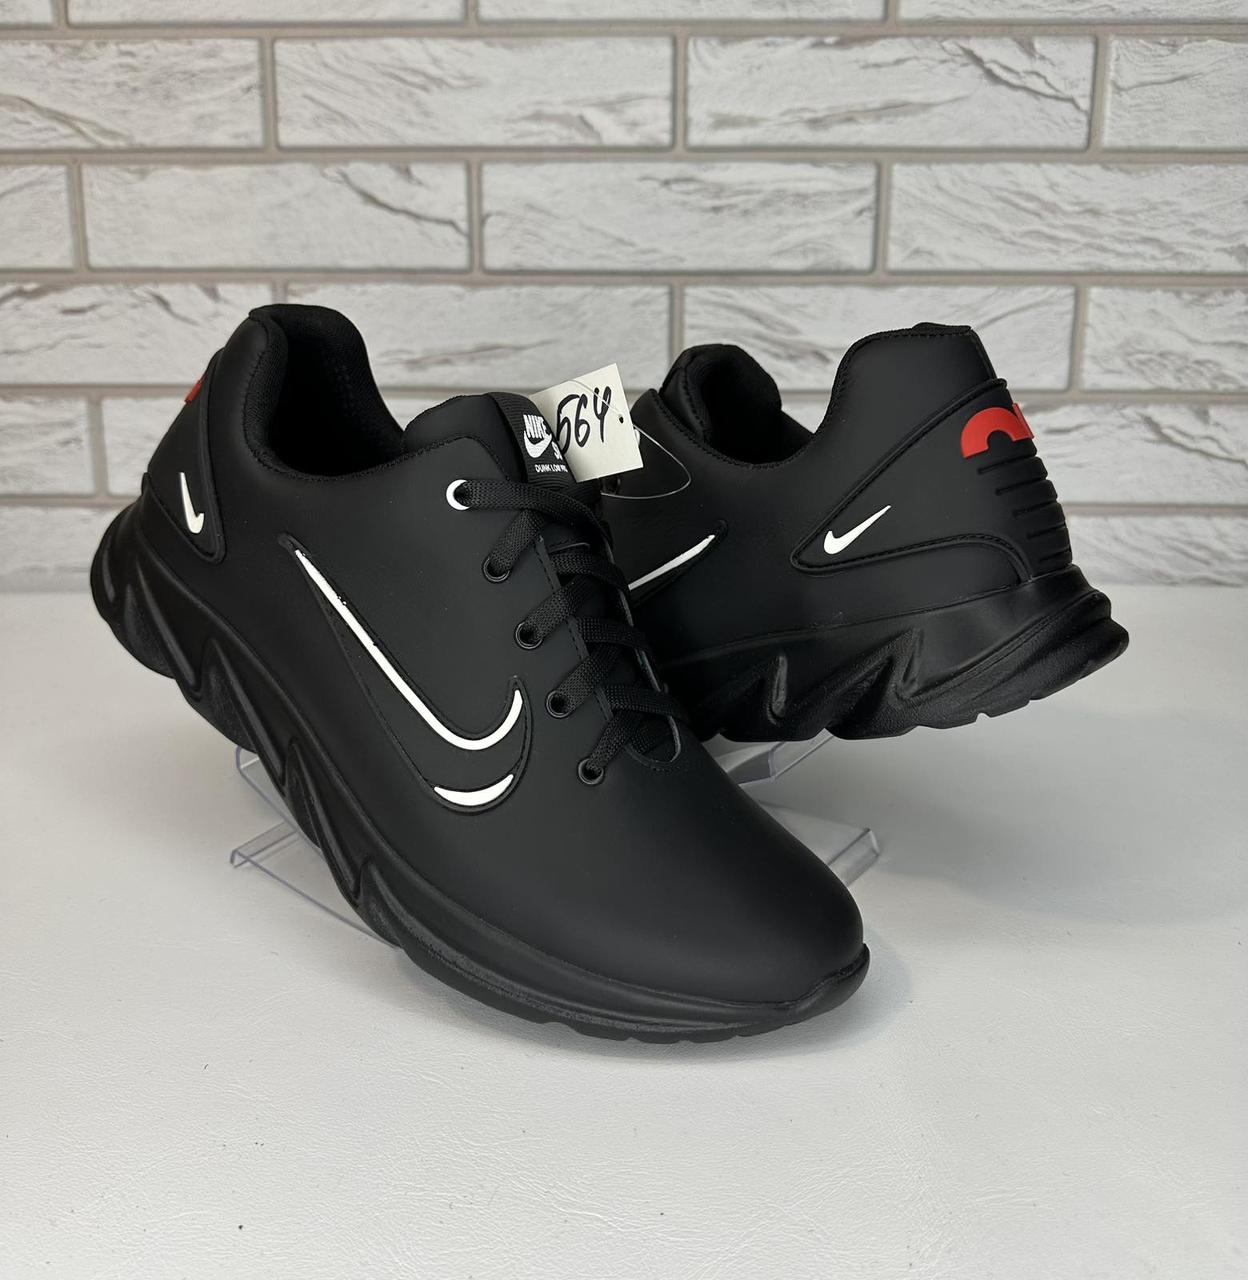 Nike удобные llll кроссовки мужские кожаные чёрные на каждый день